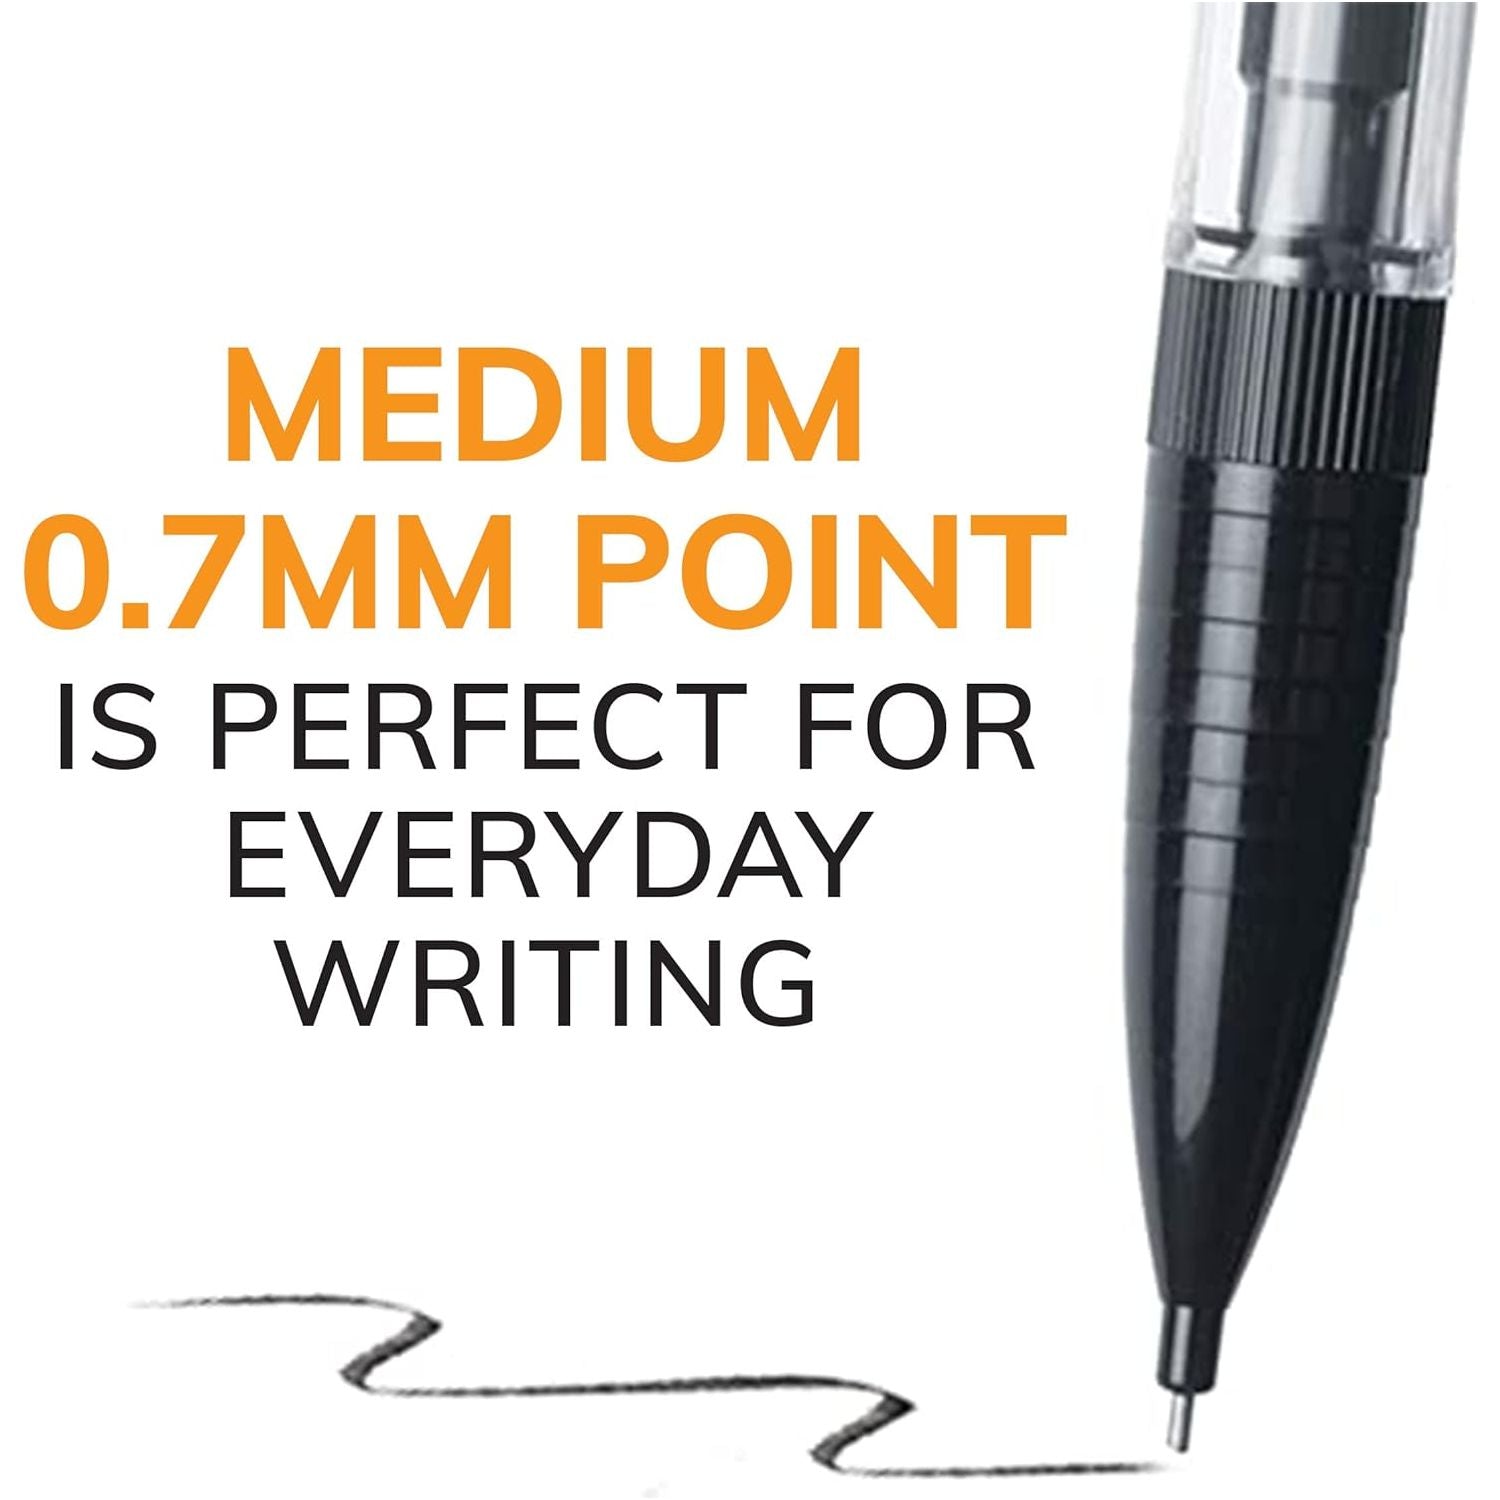 قلم رصاص ميكانيكي فائق النعومة من بيك، نقطة متوسطة (0.7 ملم)، مثالي للفصل الدراسي ووقت الاختبار، 40 قلمًا